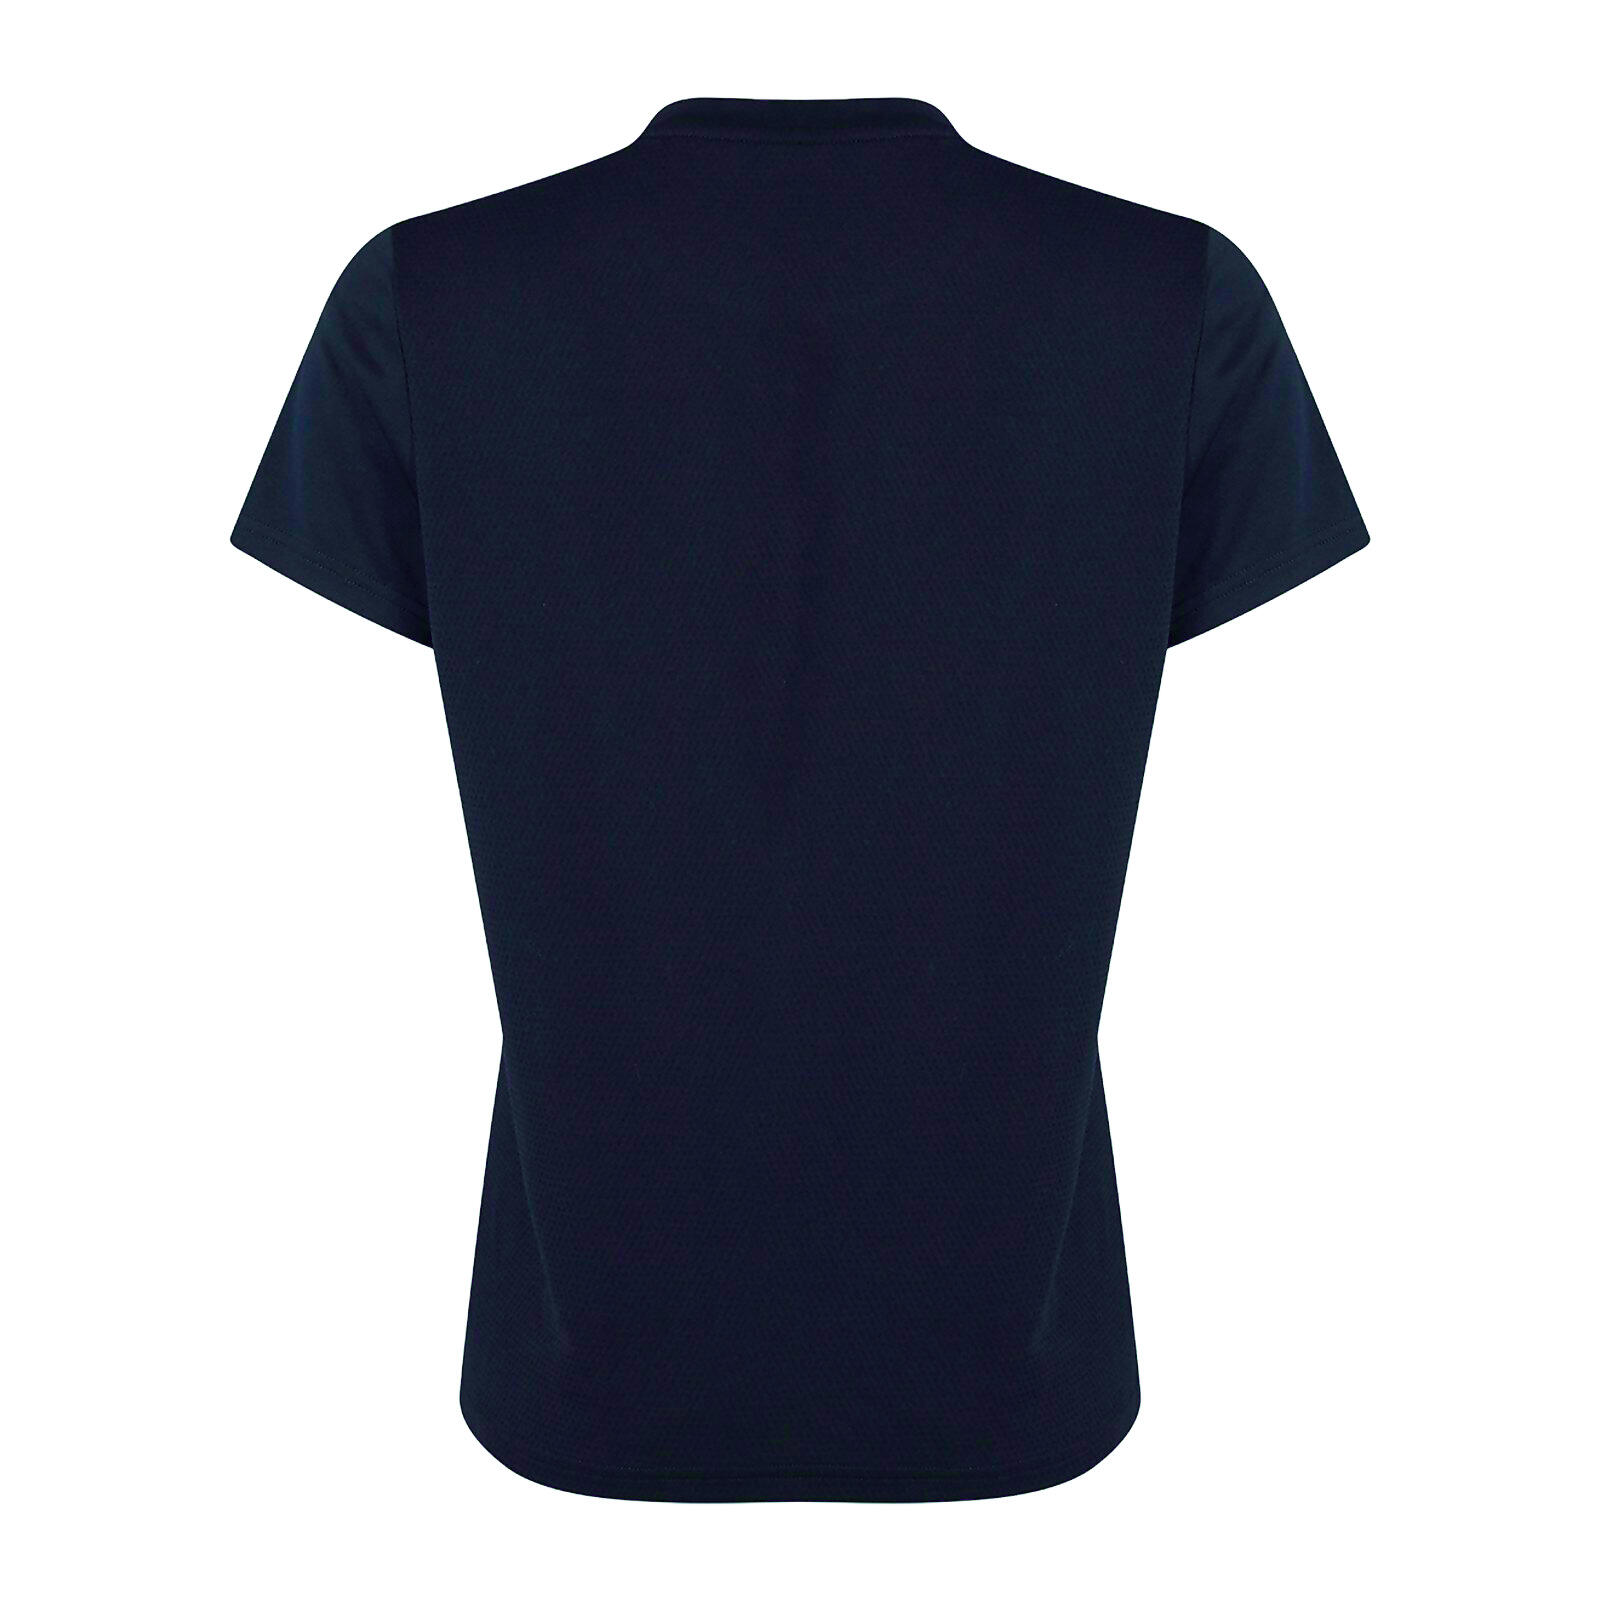 Womens/Ladies Club Dry TShirt (Navy) 2/3